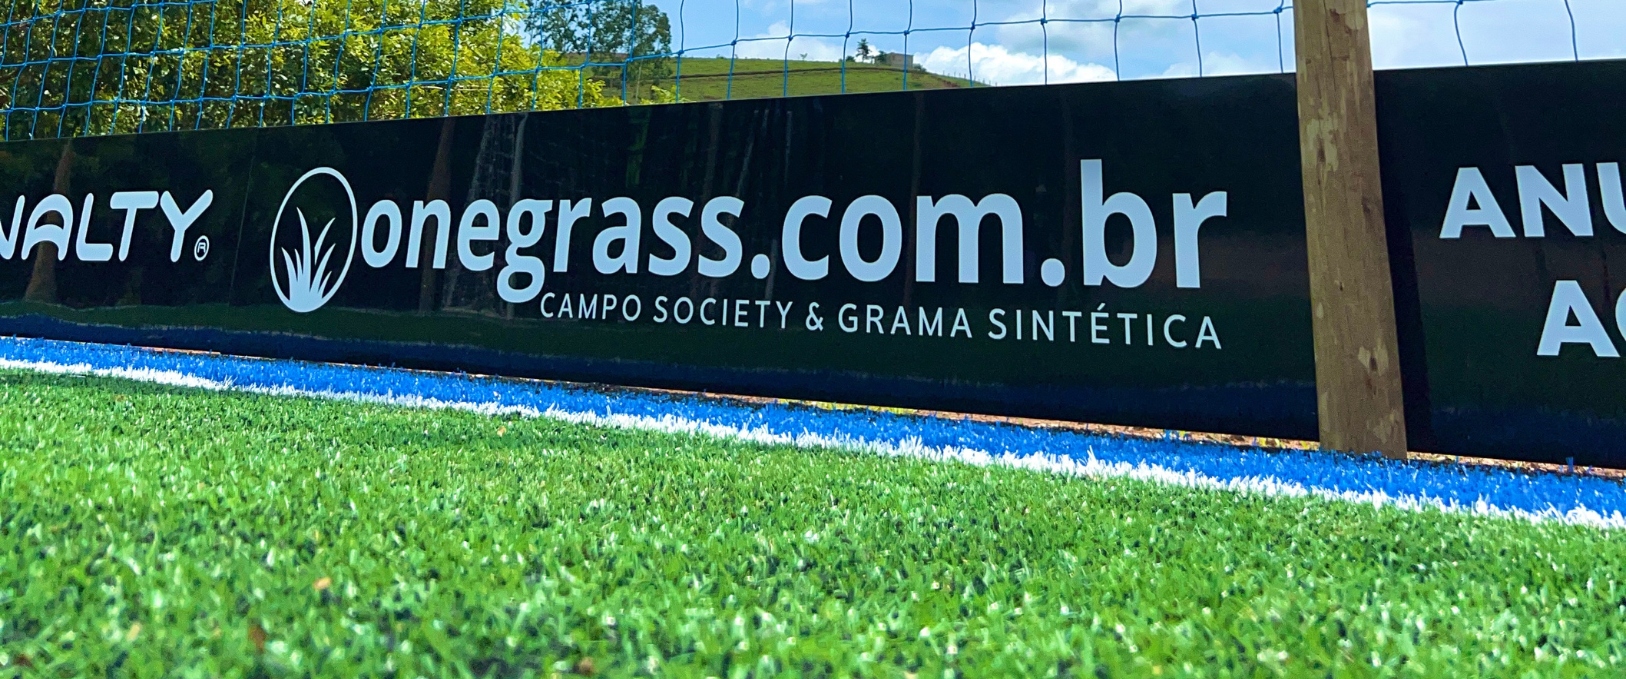 A melhor grama sintética do Brasil. Onegrass!